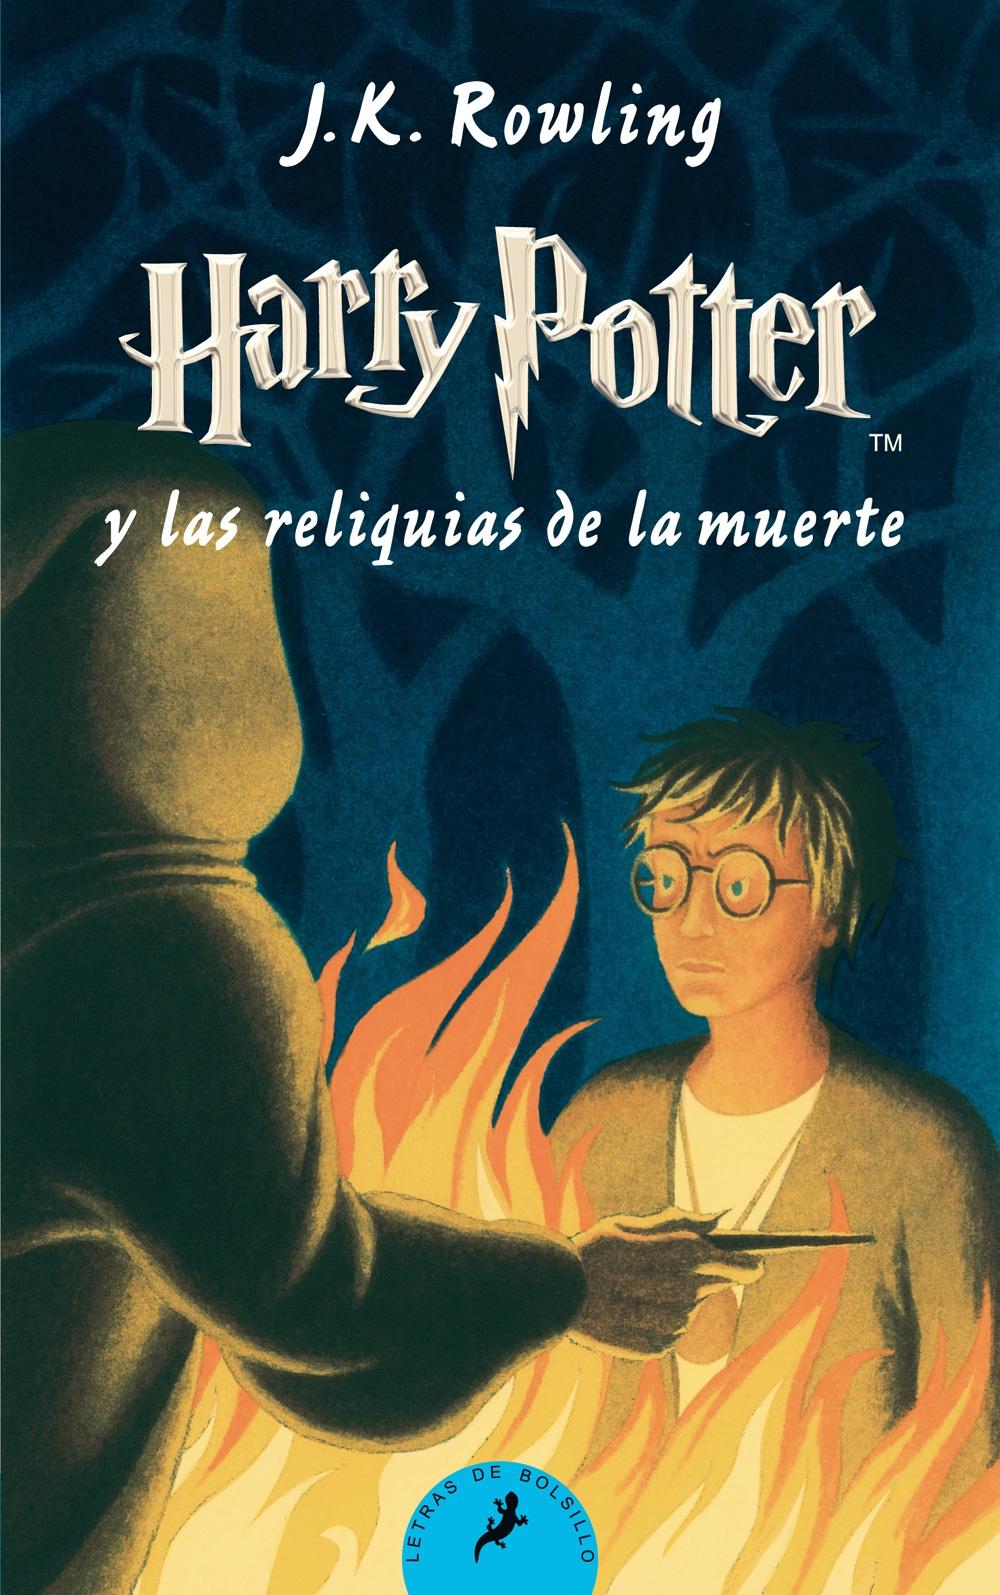 Harry Potter y las Reliquias de la Muerte "Hp 7 Bolsillo". 